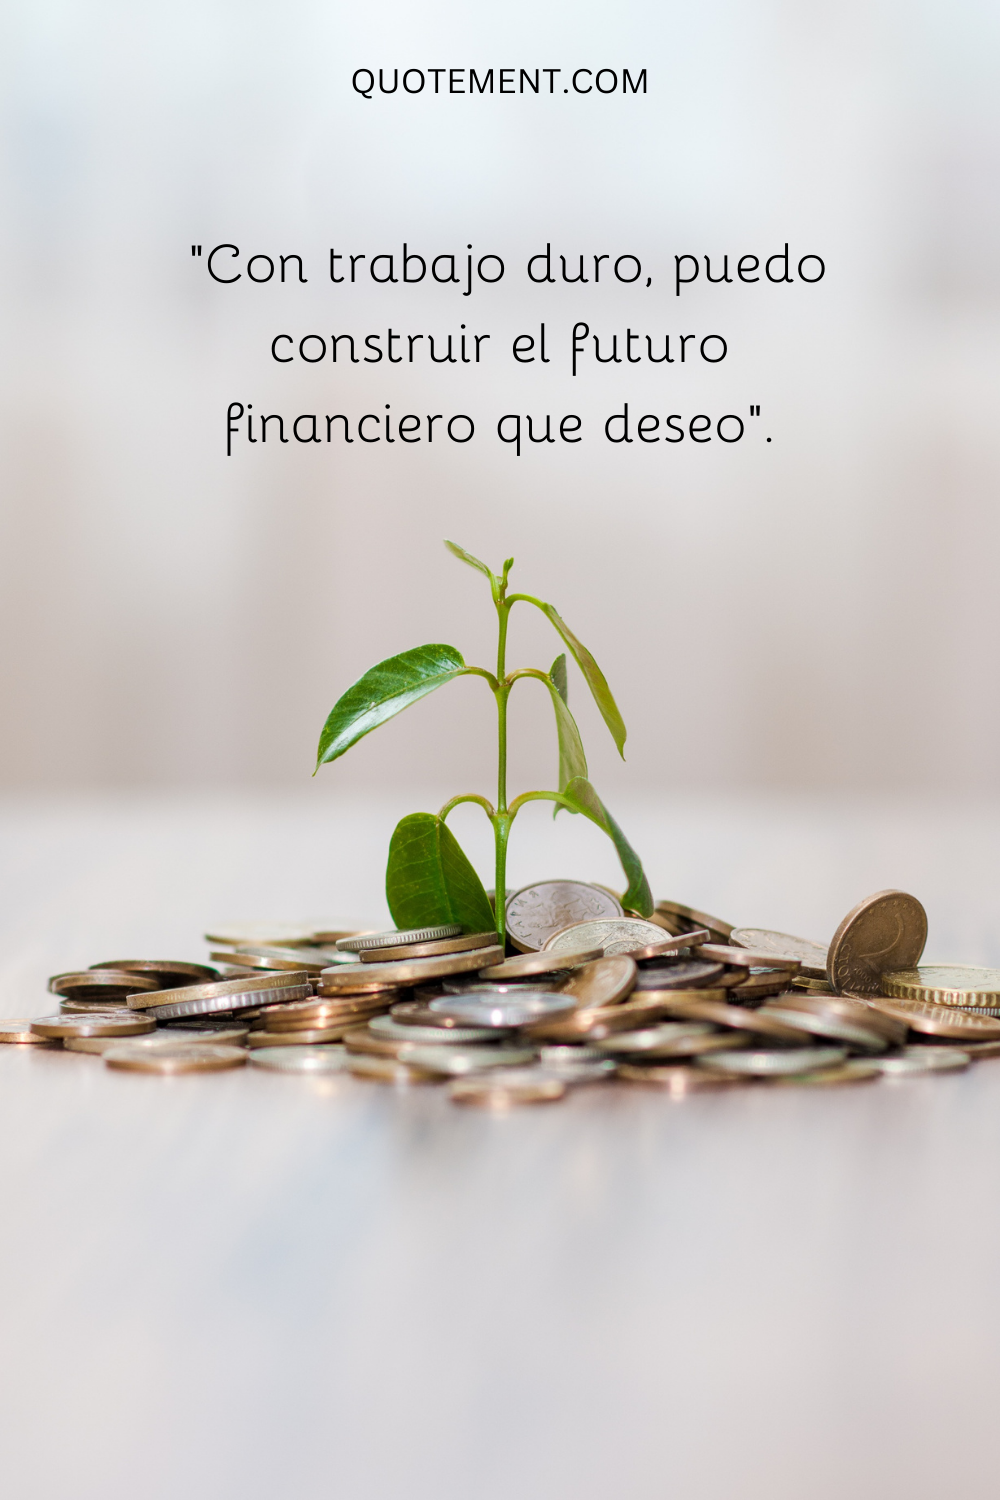 "Con trabajo duro, puedo construir el futuro financiero que deseo".